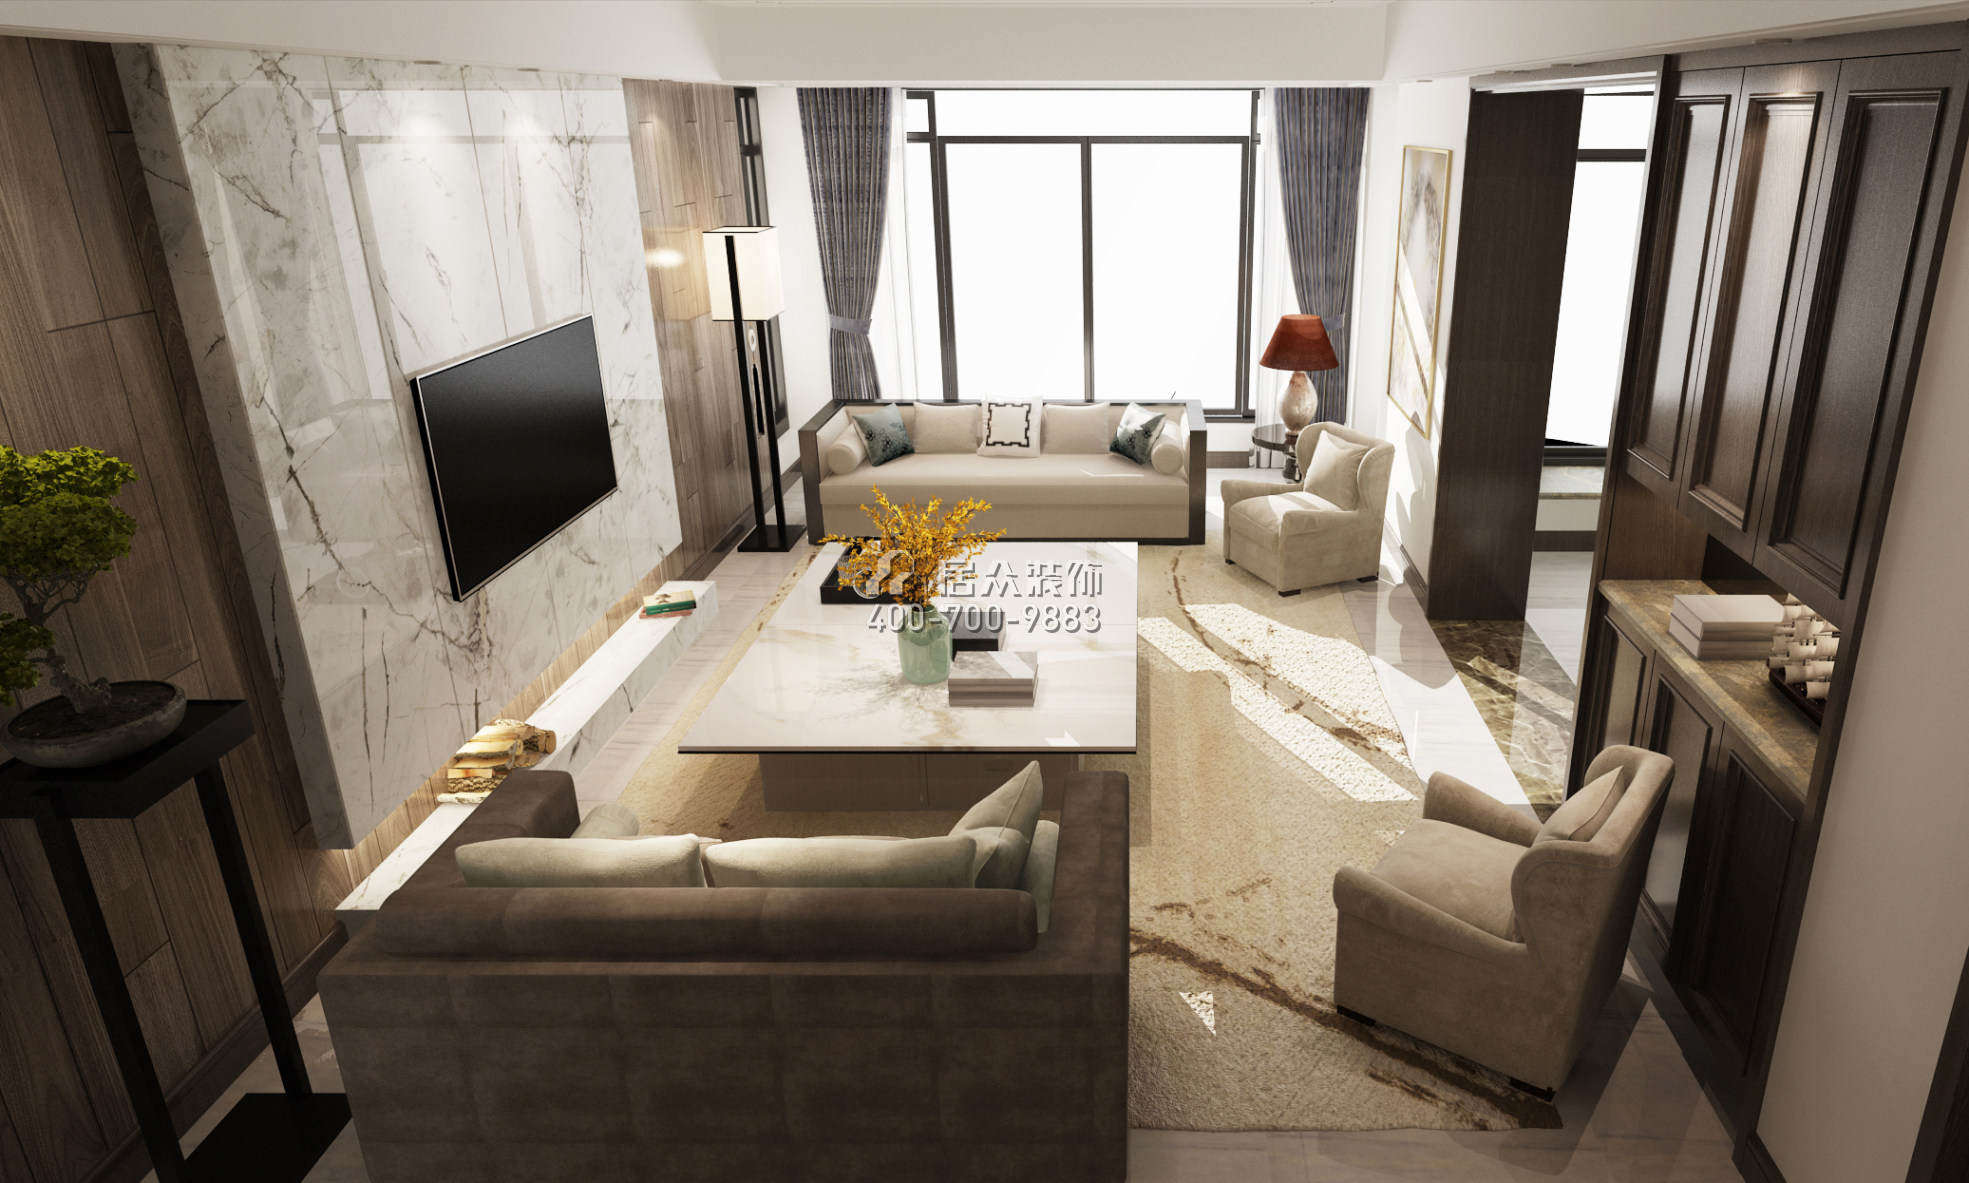 天源星城132平方米现代简约风格平层户型客厅装修效果图